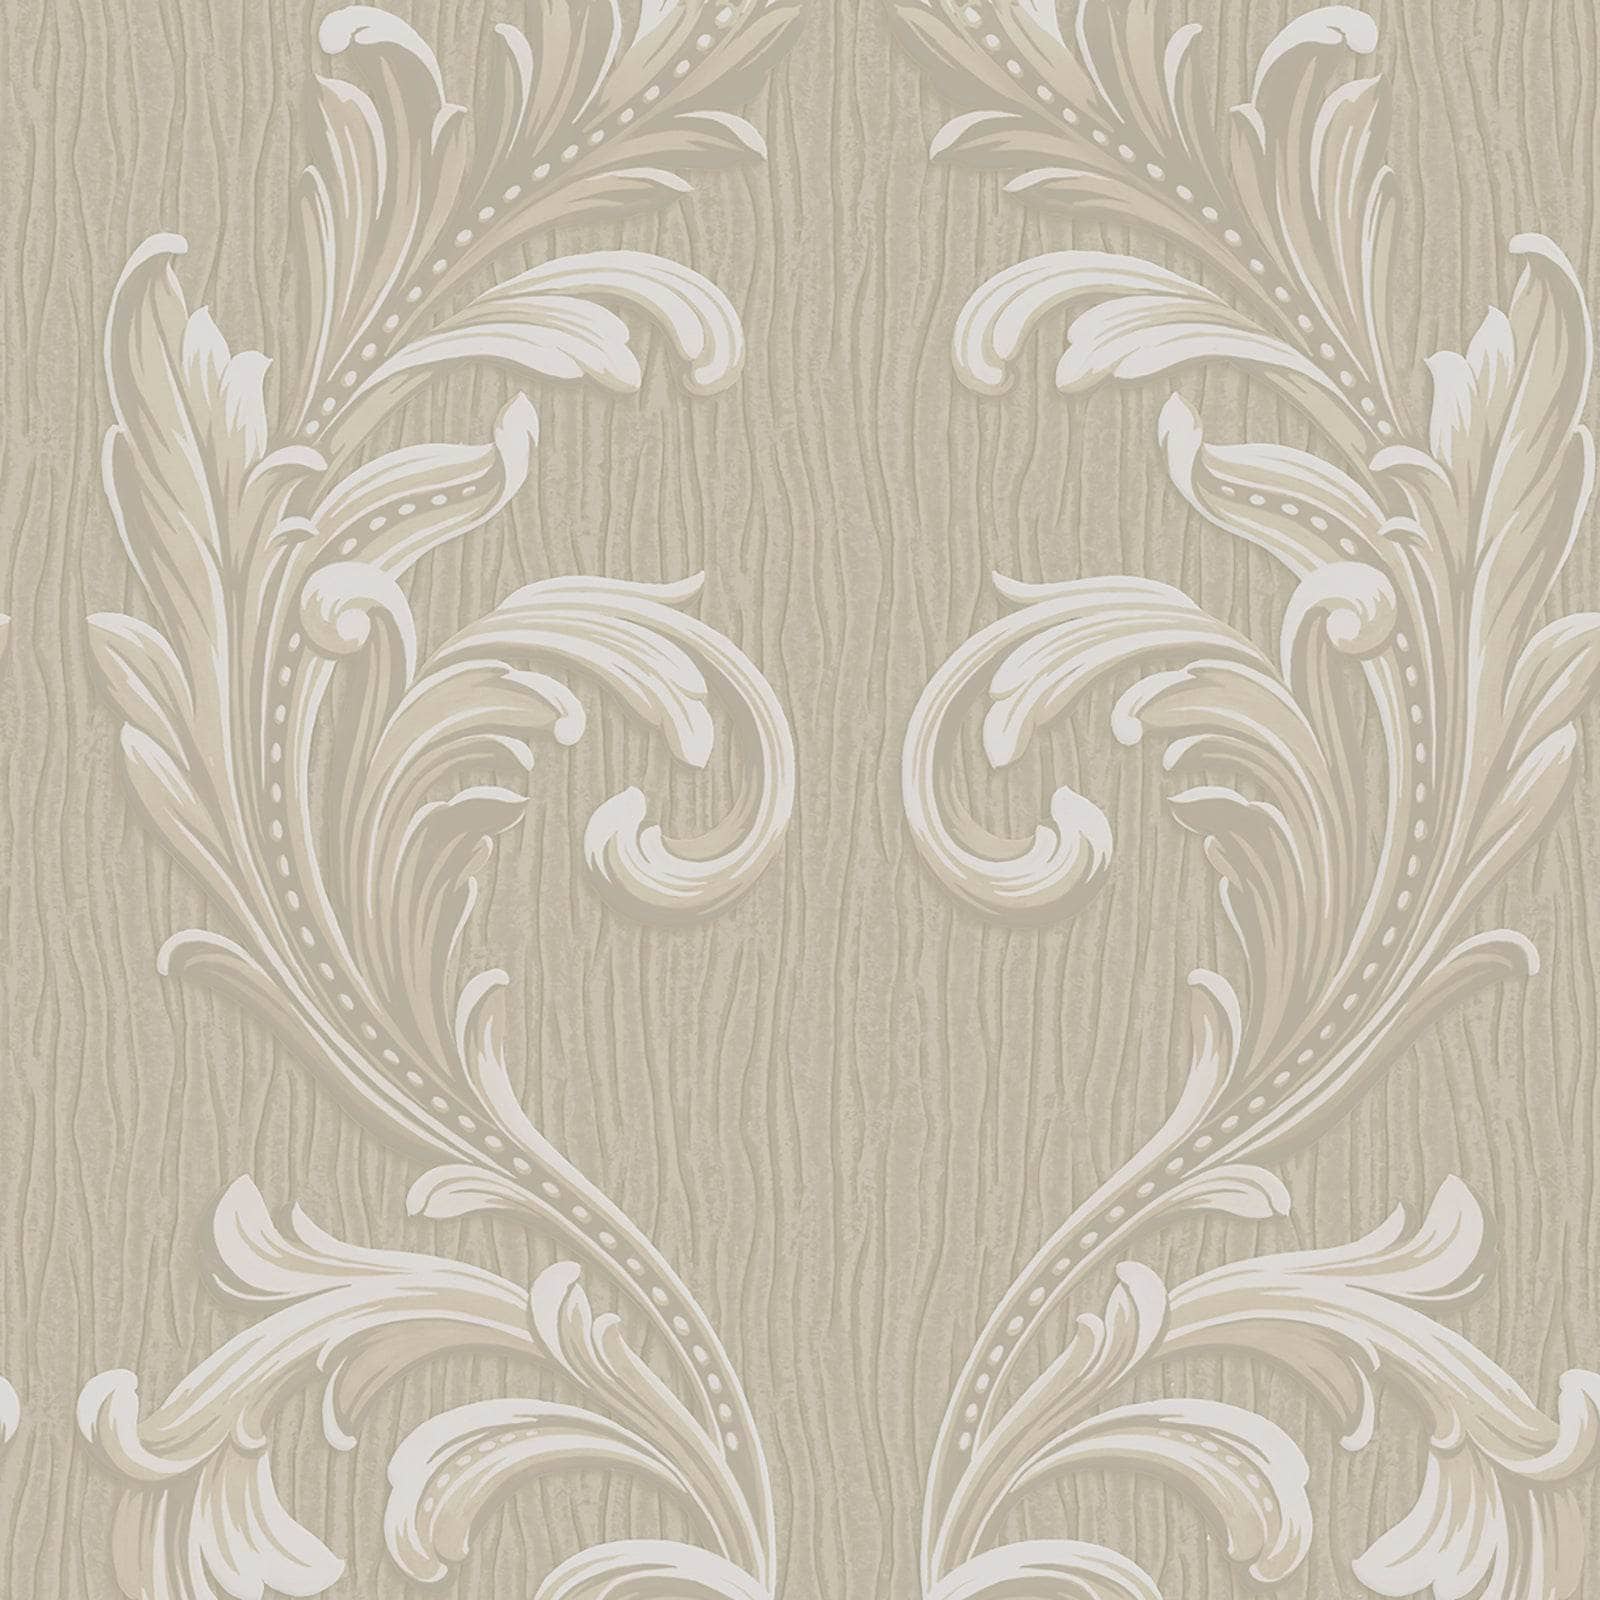 Wallpaper  -  Belgravia Tiffany Beige Scroll Wallpaper - 60005528  -  60005528